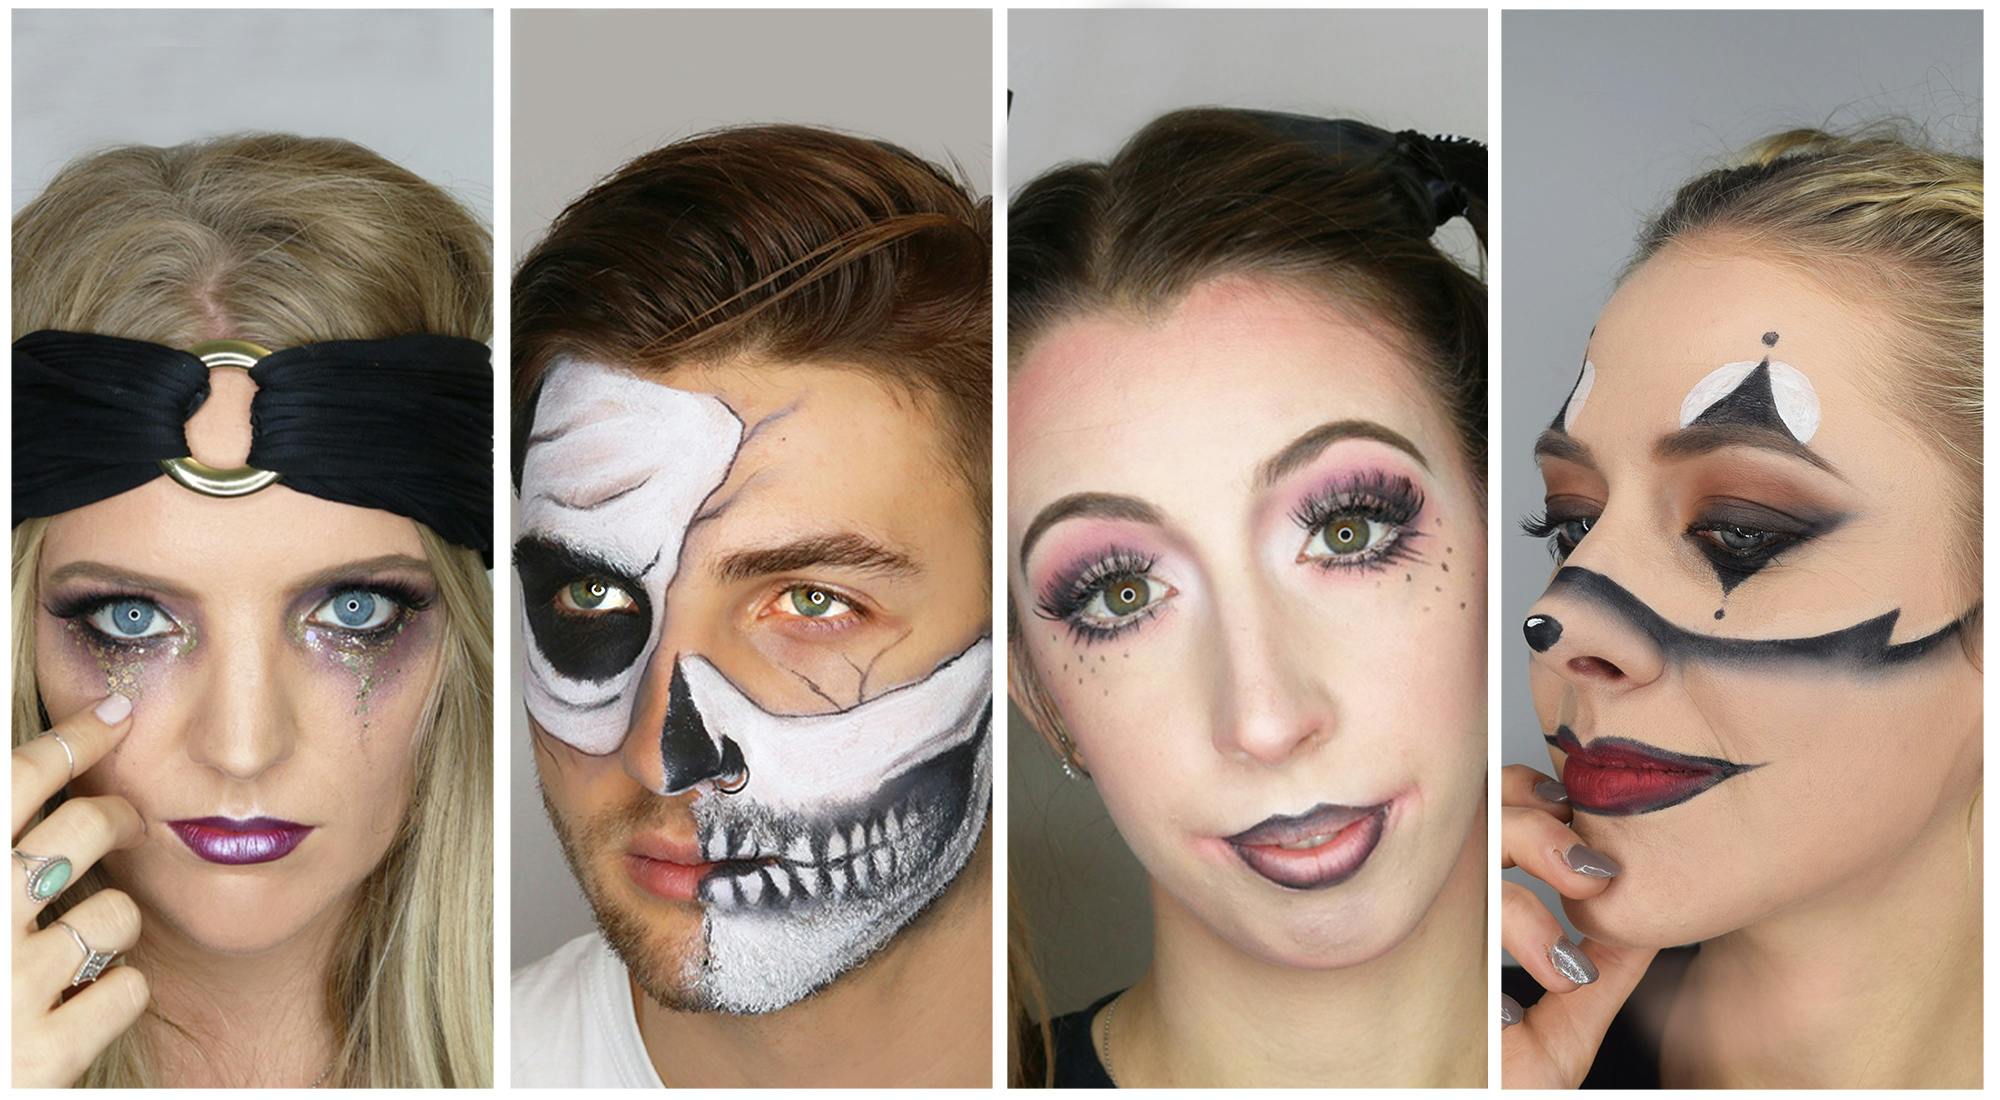 makeup safety and hygiene halloween 2020 Spook Tacular Halloween Makeup Looks For 2018 Blow Ltd makeup safety and hygiene halloween 2020